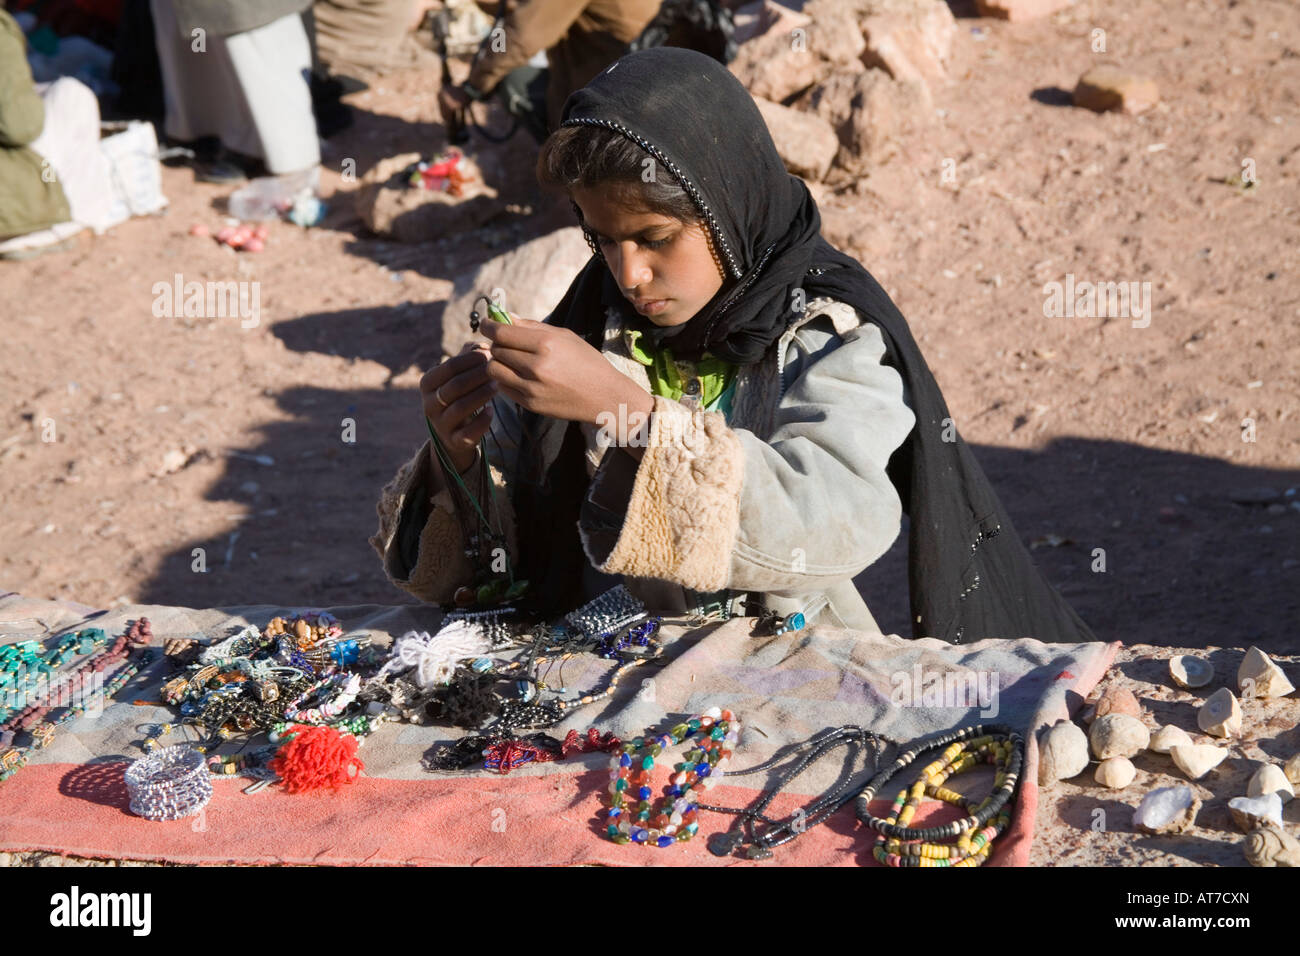 Désert du Sinaï Egypte Afrique du Nord une jeune fille bédouine Février faire le tri des bibelots disposés sur un mur à vendre Banque D'Images